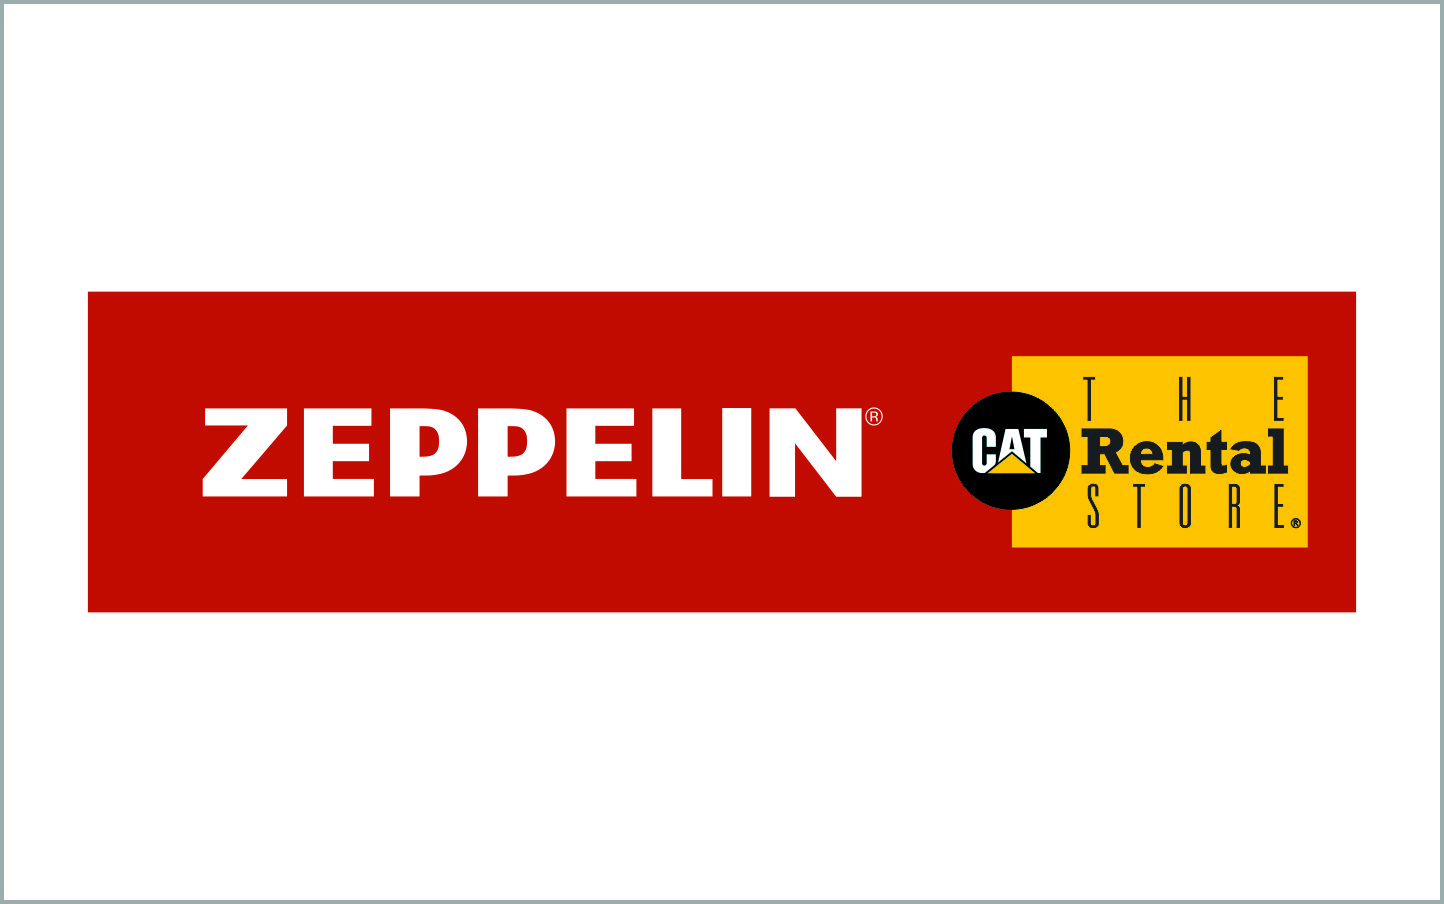 Zeppelin Rental